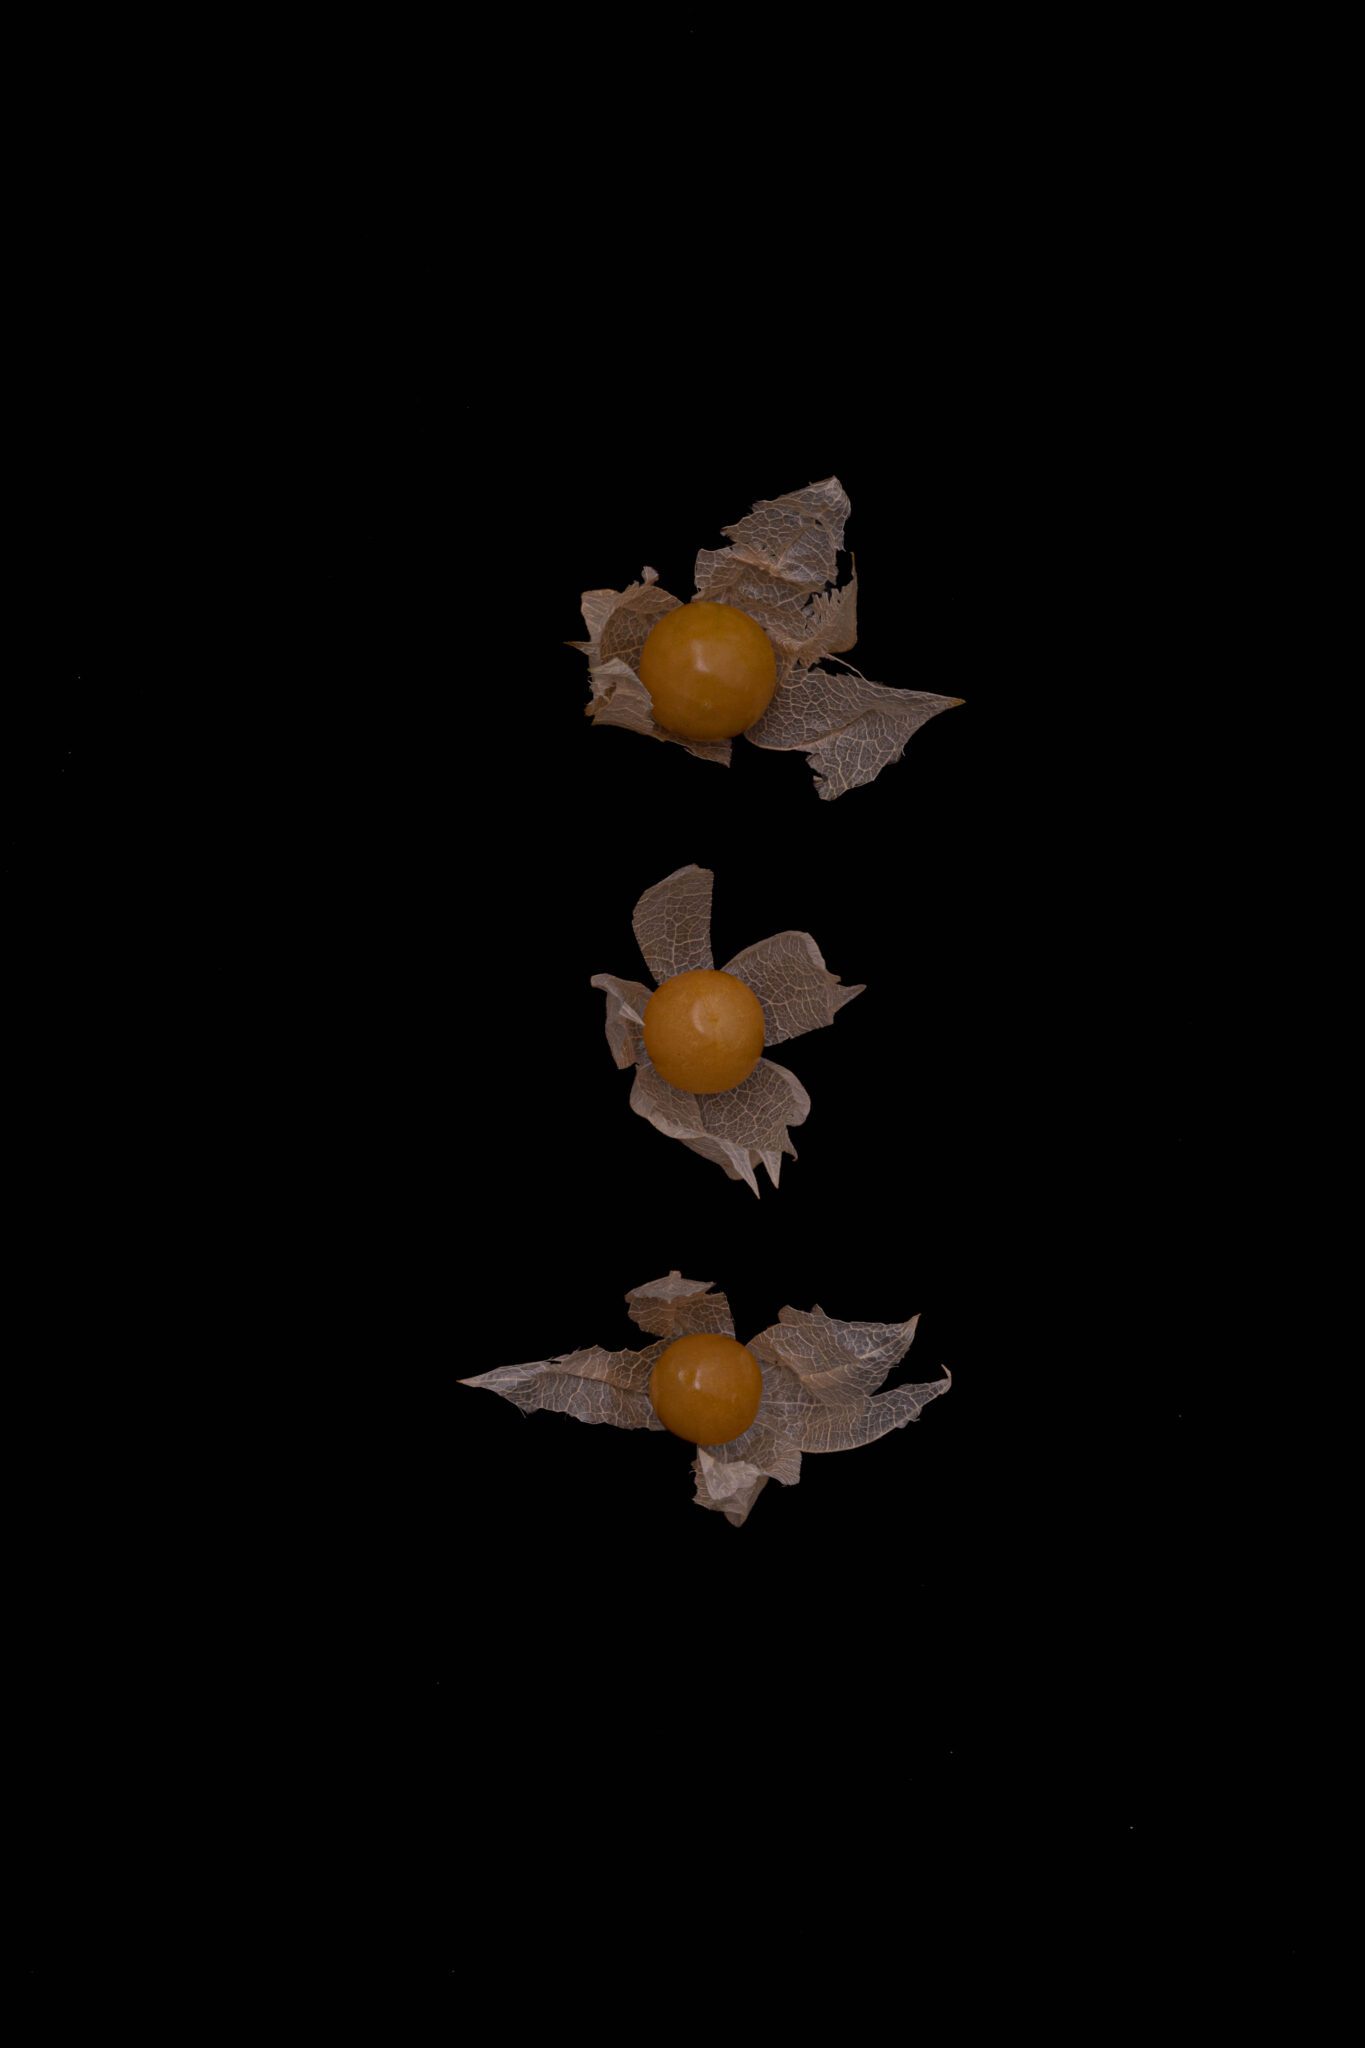 Drei Ananasphysalis liegen in senkrechter Linie auf schwarzem Untergrund. Die Lampion-Früchte haben geöffnete Hüllblätter, in denen die runden hellorangen Früchte herausleuchten. Foto Genussfotografin Sabine Hennek